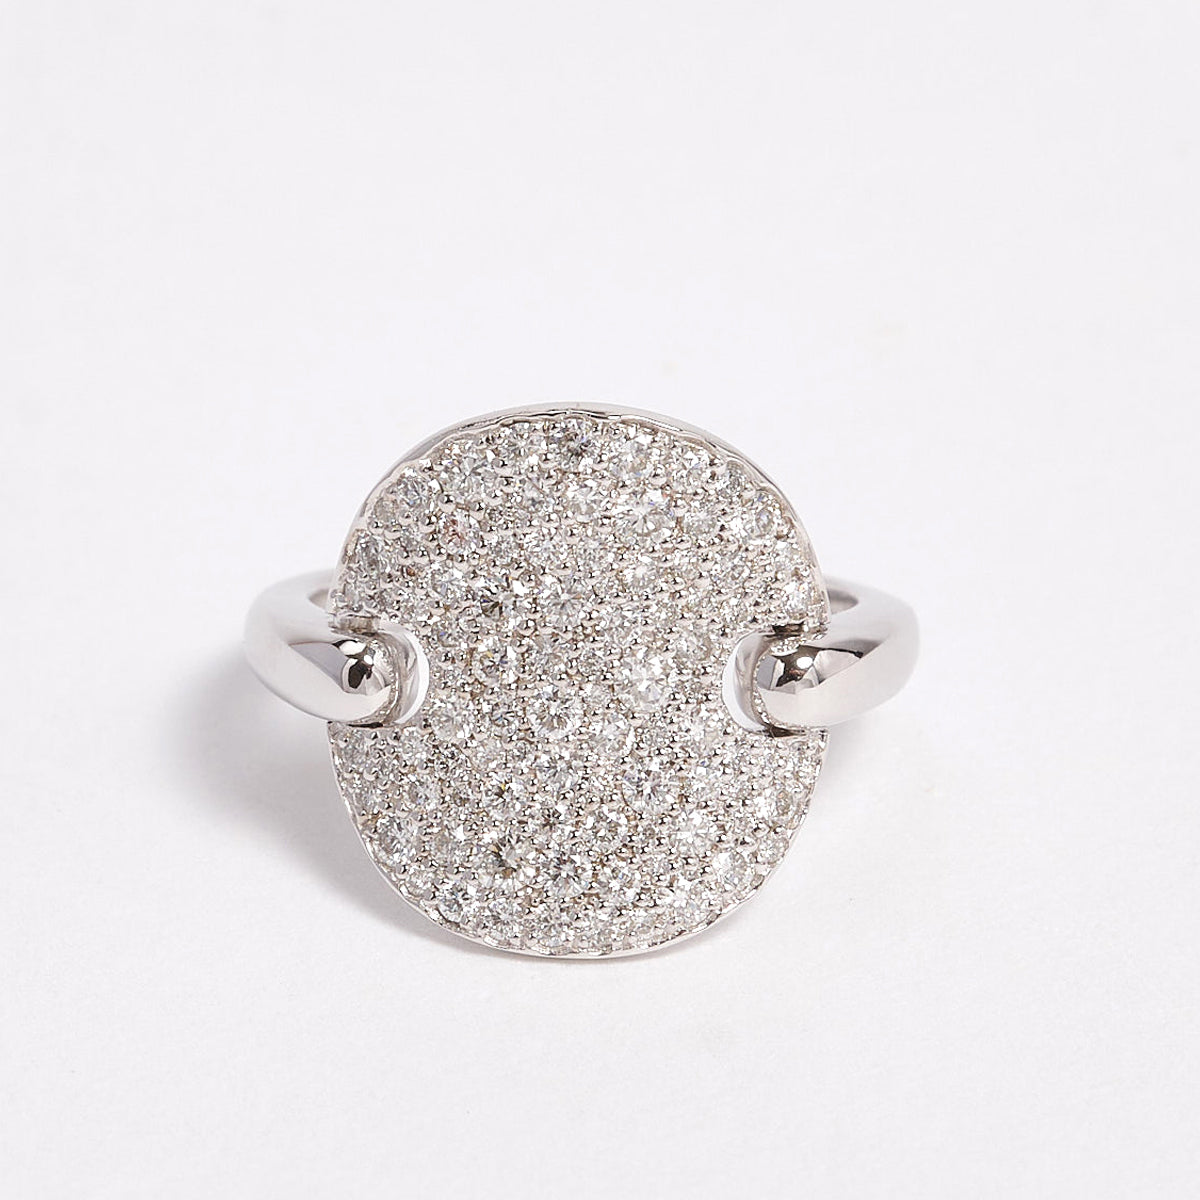 Adira 9ct White Gold & Diamond Bespoke Ring